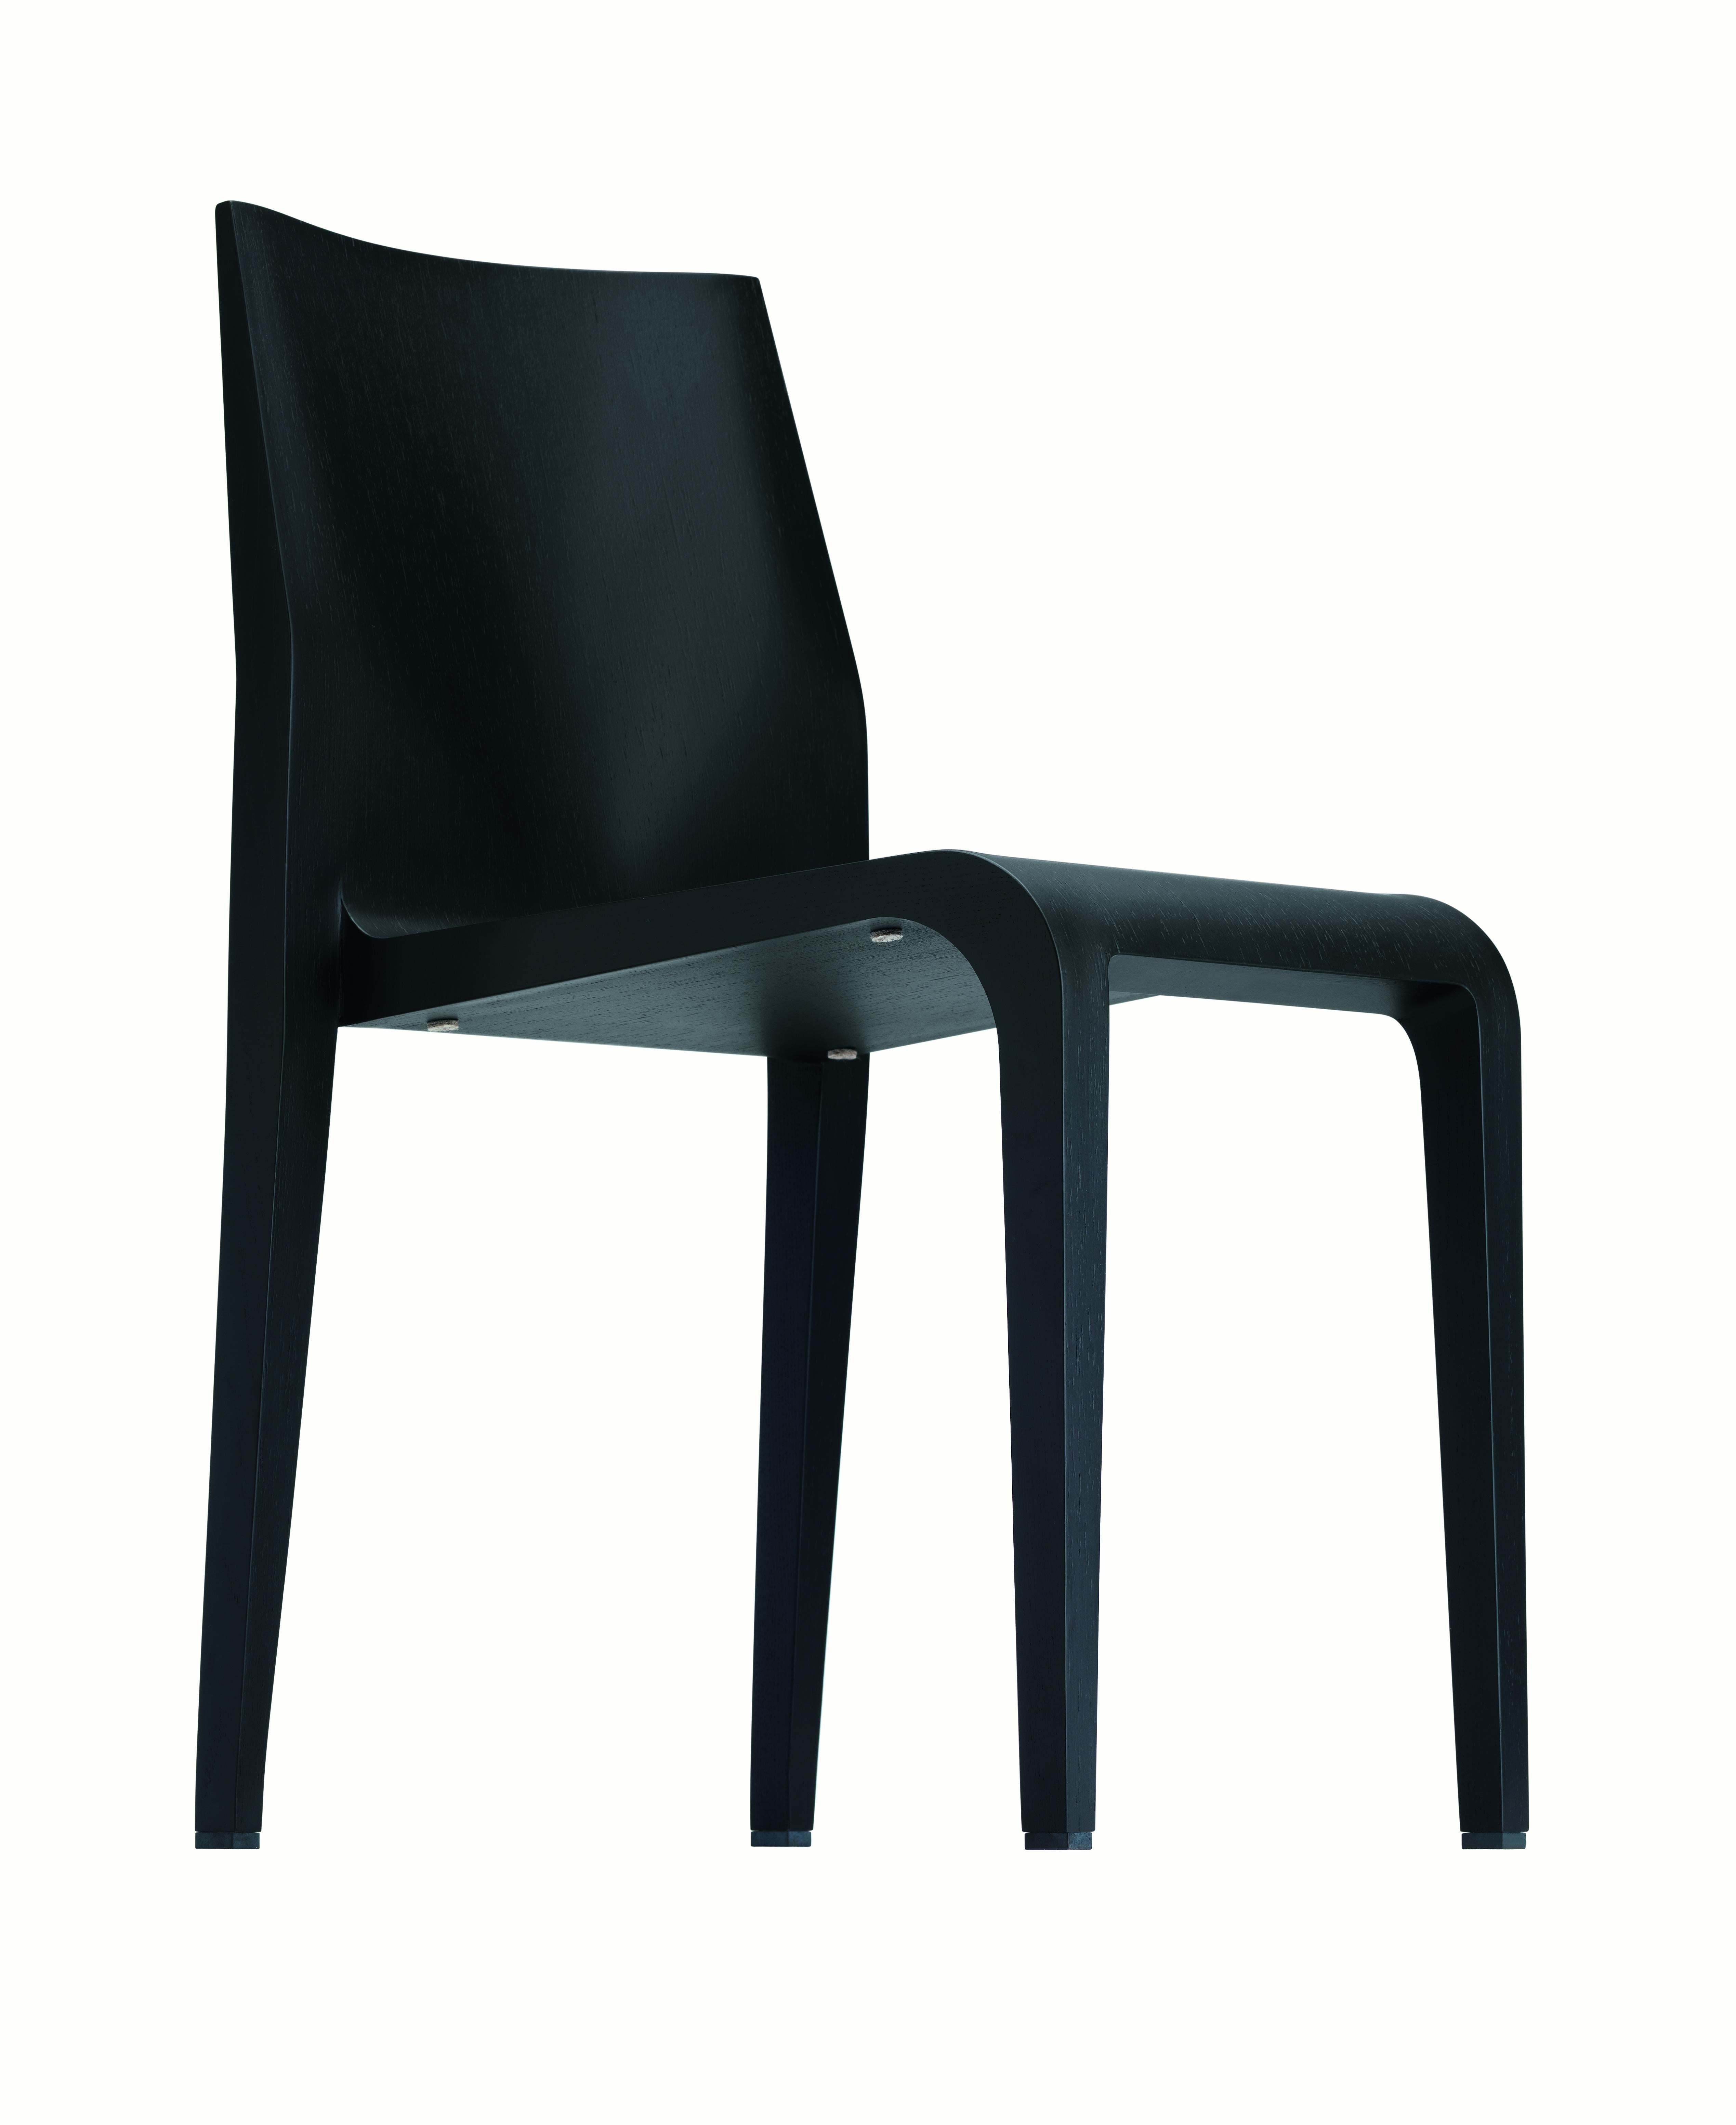 Alias 301 Laleggera Stuhl aus schwarz gebeiztem Holz von Riccardo Blumer

Stapelbarer Stuhl mit Struktur aus massivem Ahorn oder Esche. Ahornfurnier oder Eichenfurnier. Interne Stütze aus eingespritztem Polyurethanschaum. Ausführung in